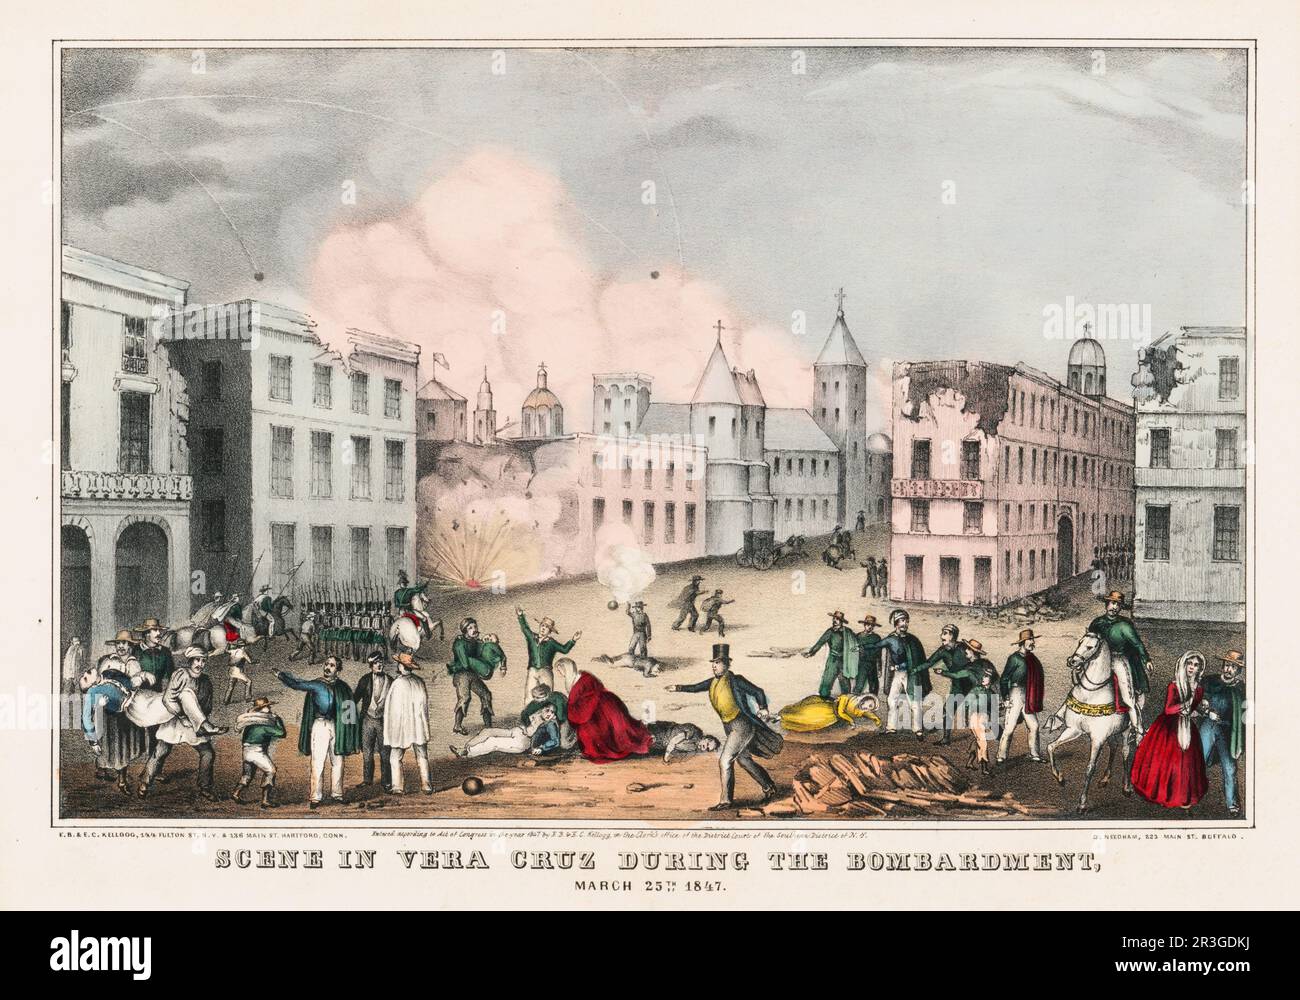 25 mars 1847 - scène à Veracruz, Mexique pendant la guerre mexicaine américaine. Banque D'Images